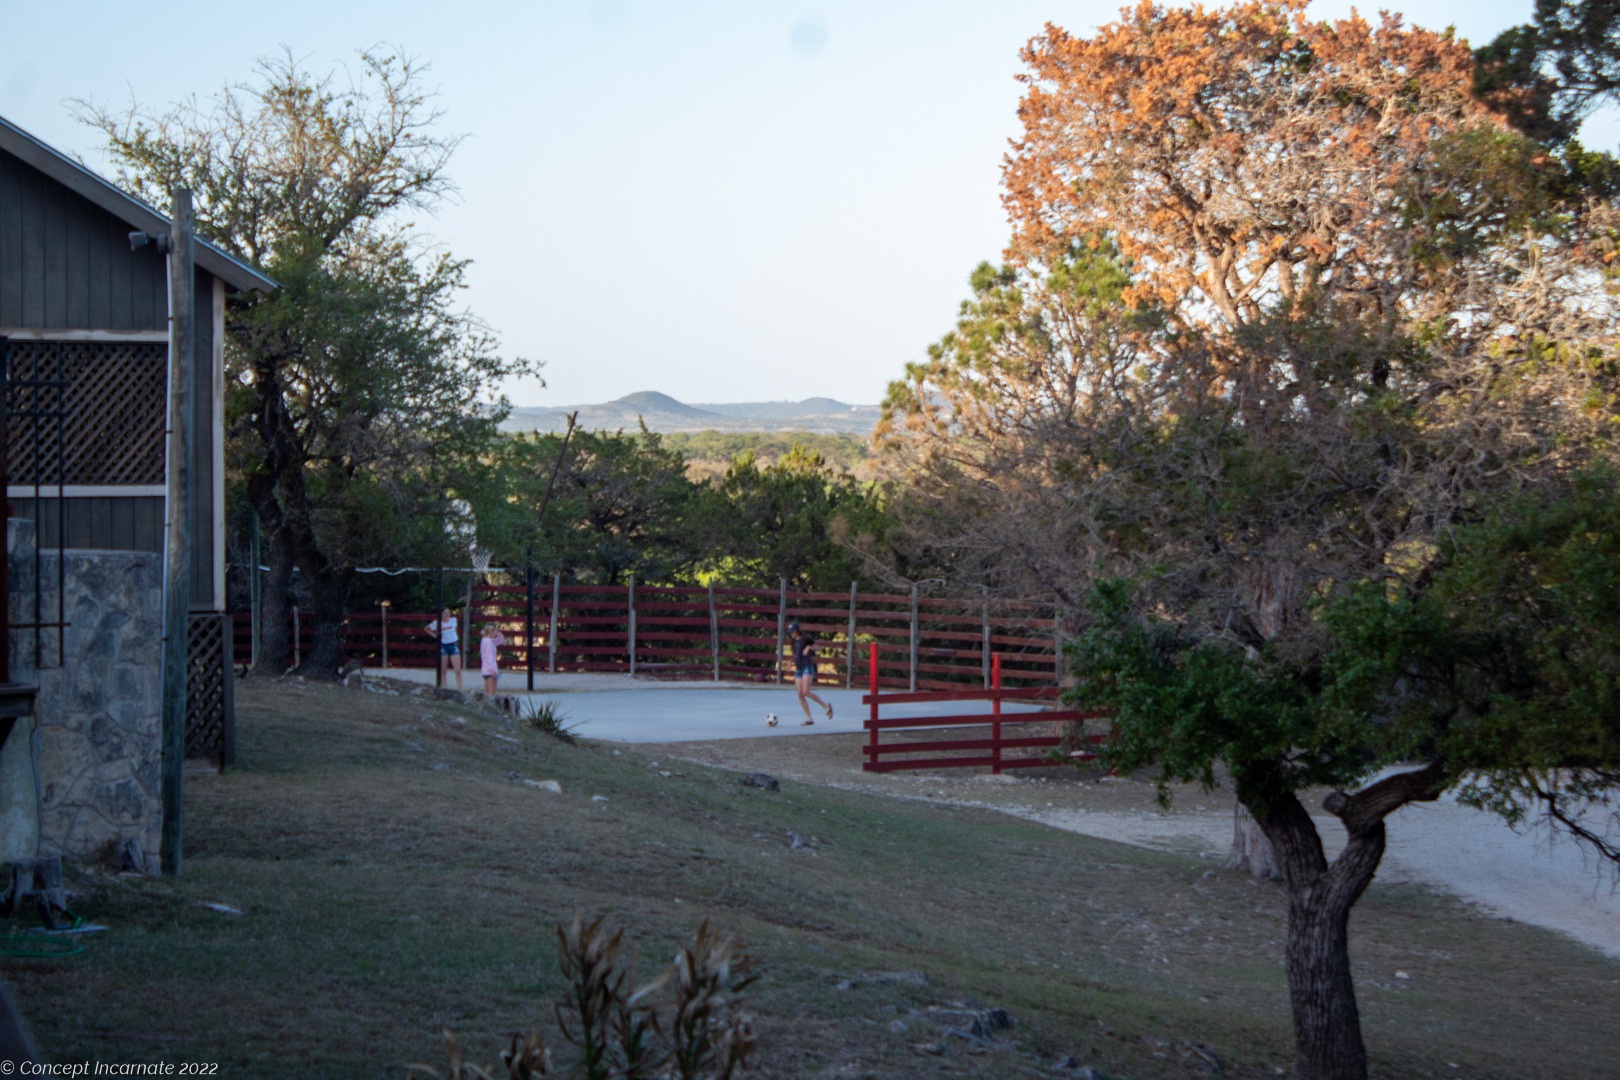 Children playing soccer at scenic hillside.